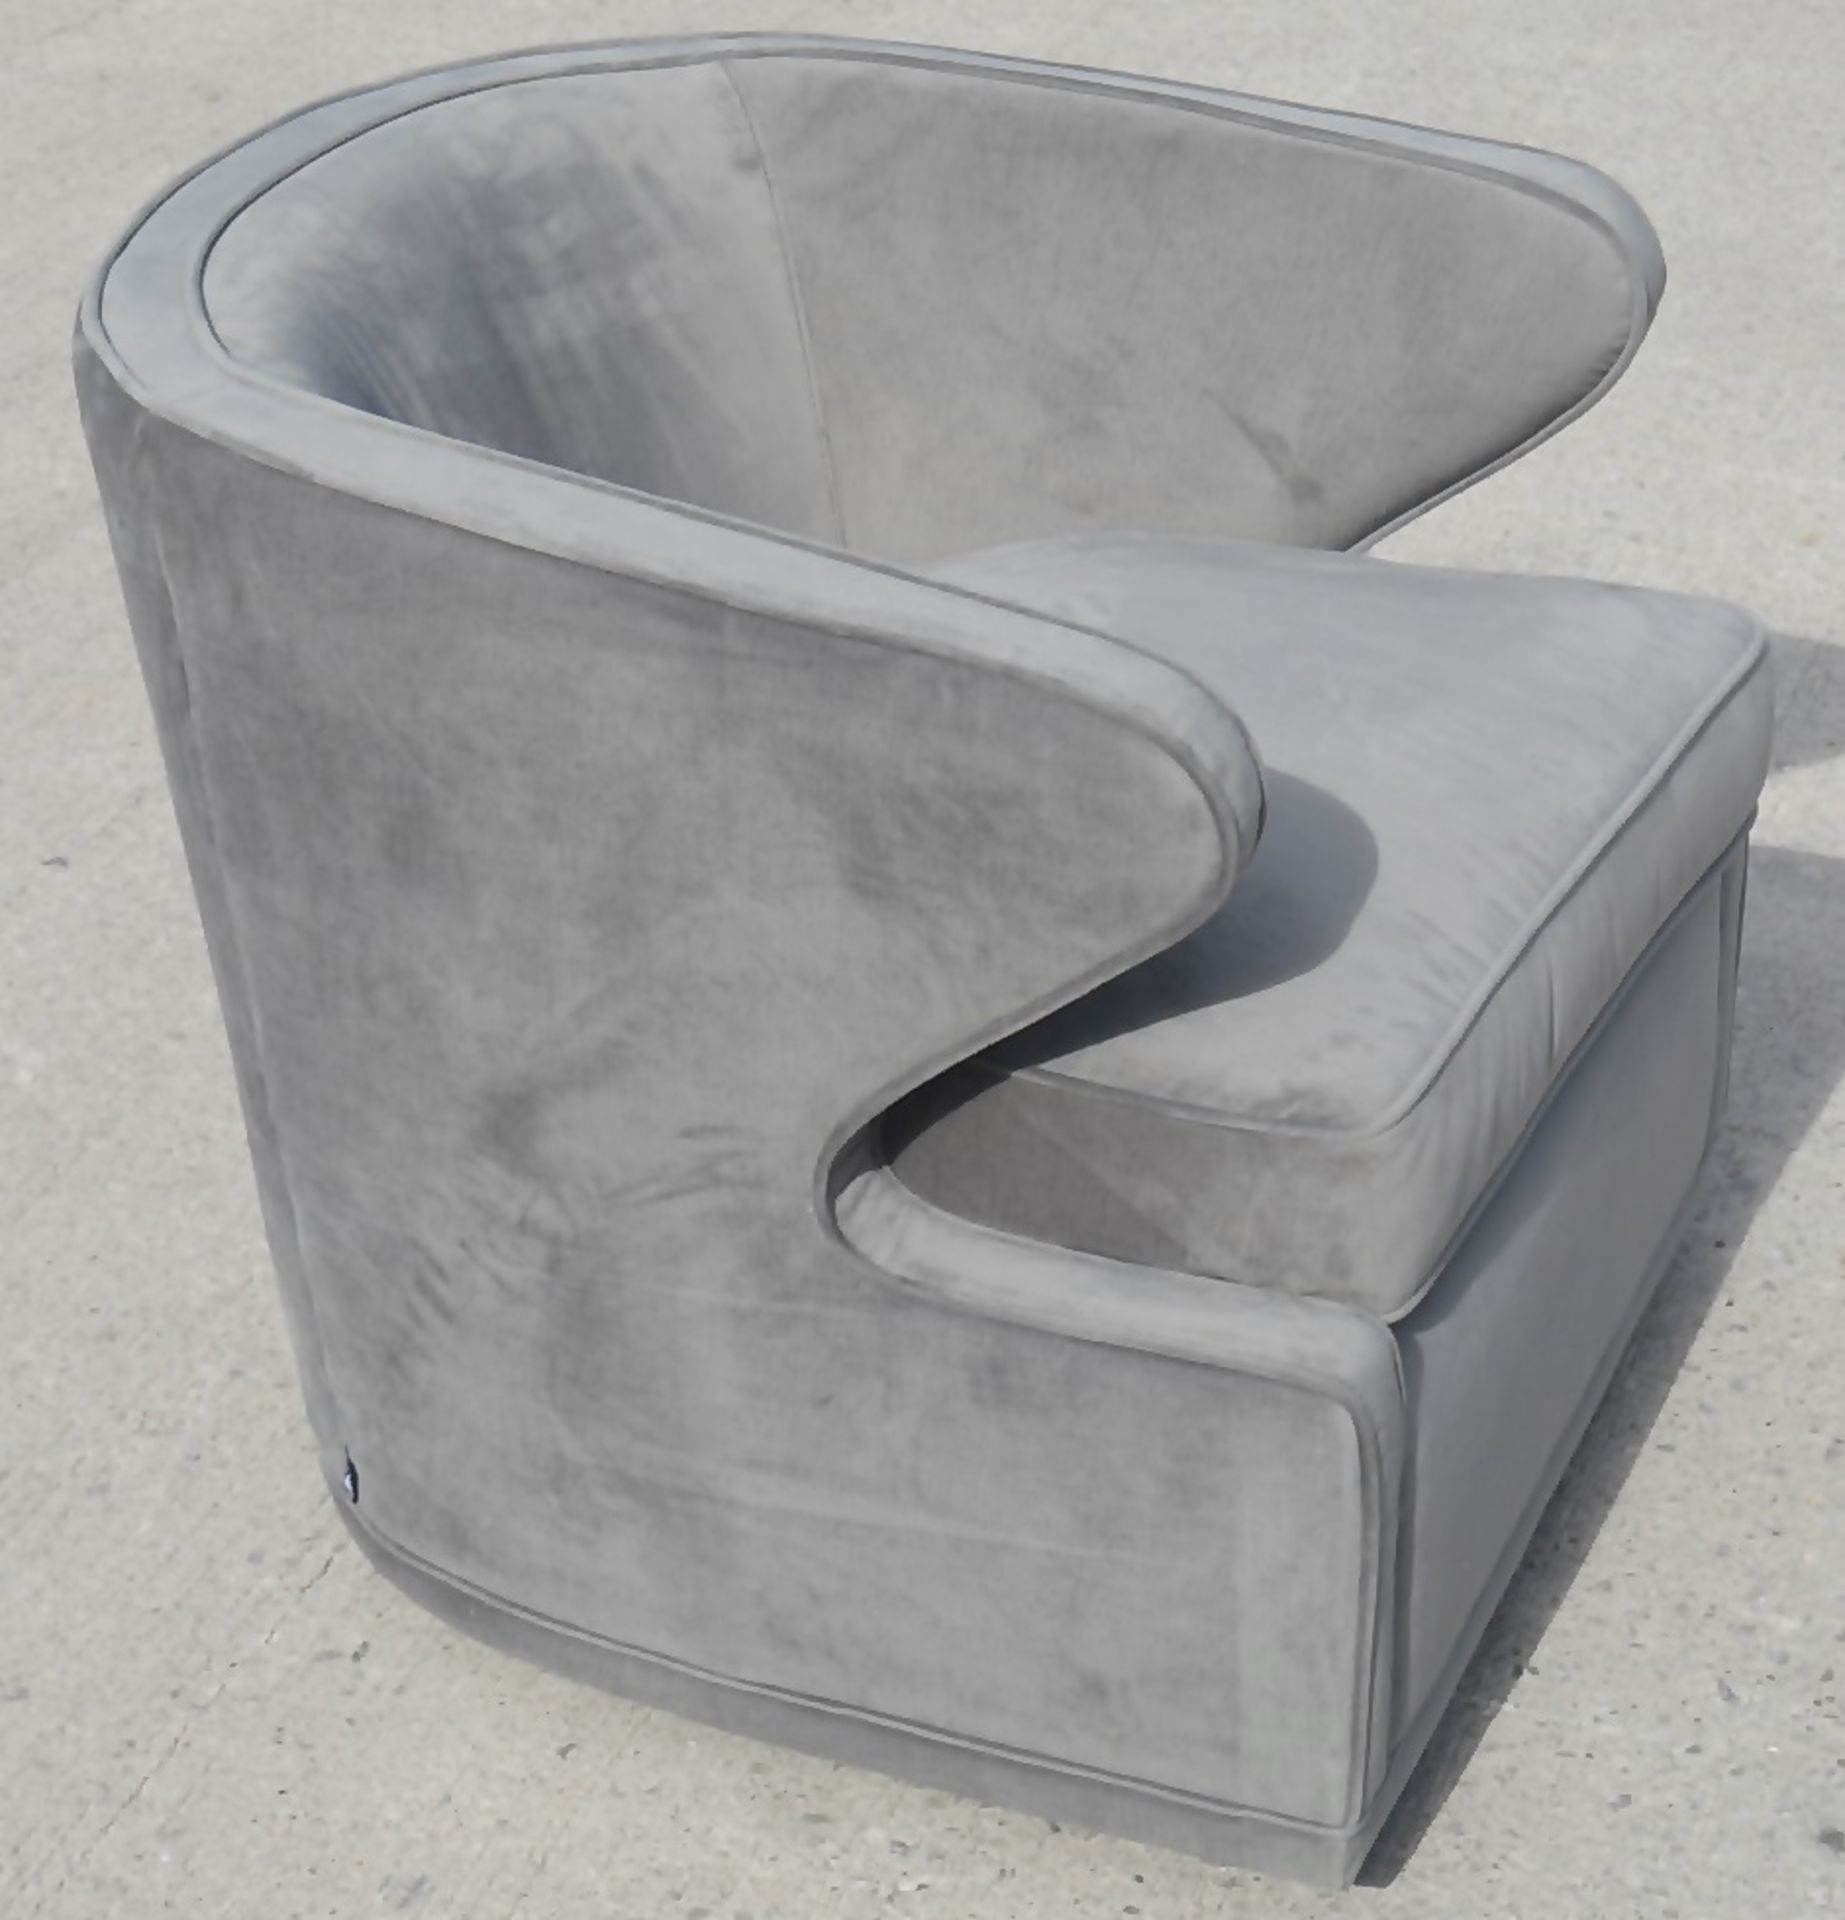 1 x EICHHOLTZ 'Dorset' Velvet Upholstered Chair In Granite Grey With Swivel Base - Ref: 5836384(B)/ - Image 13 of 13